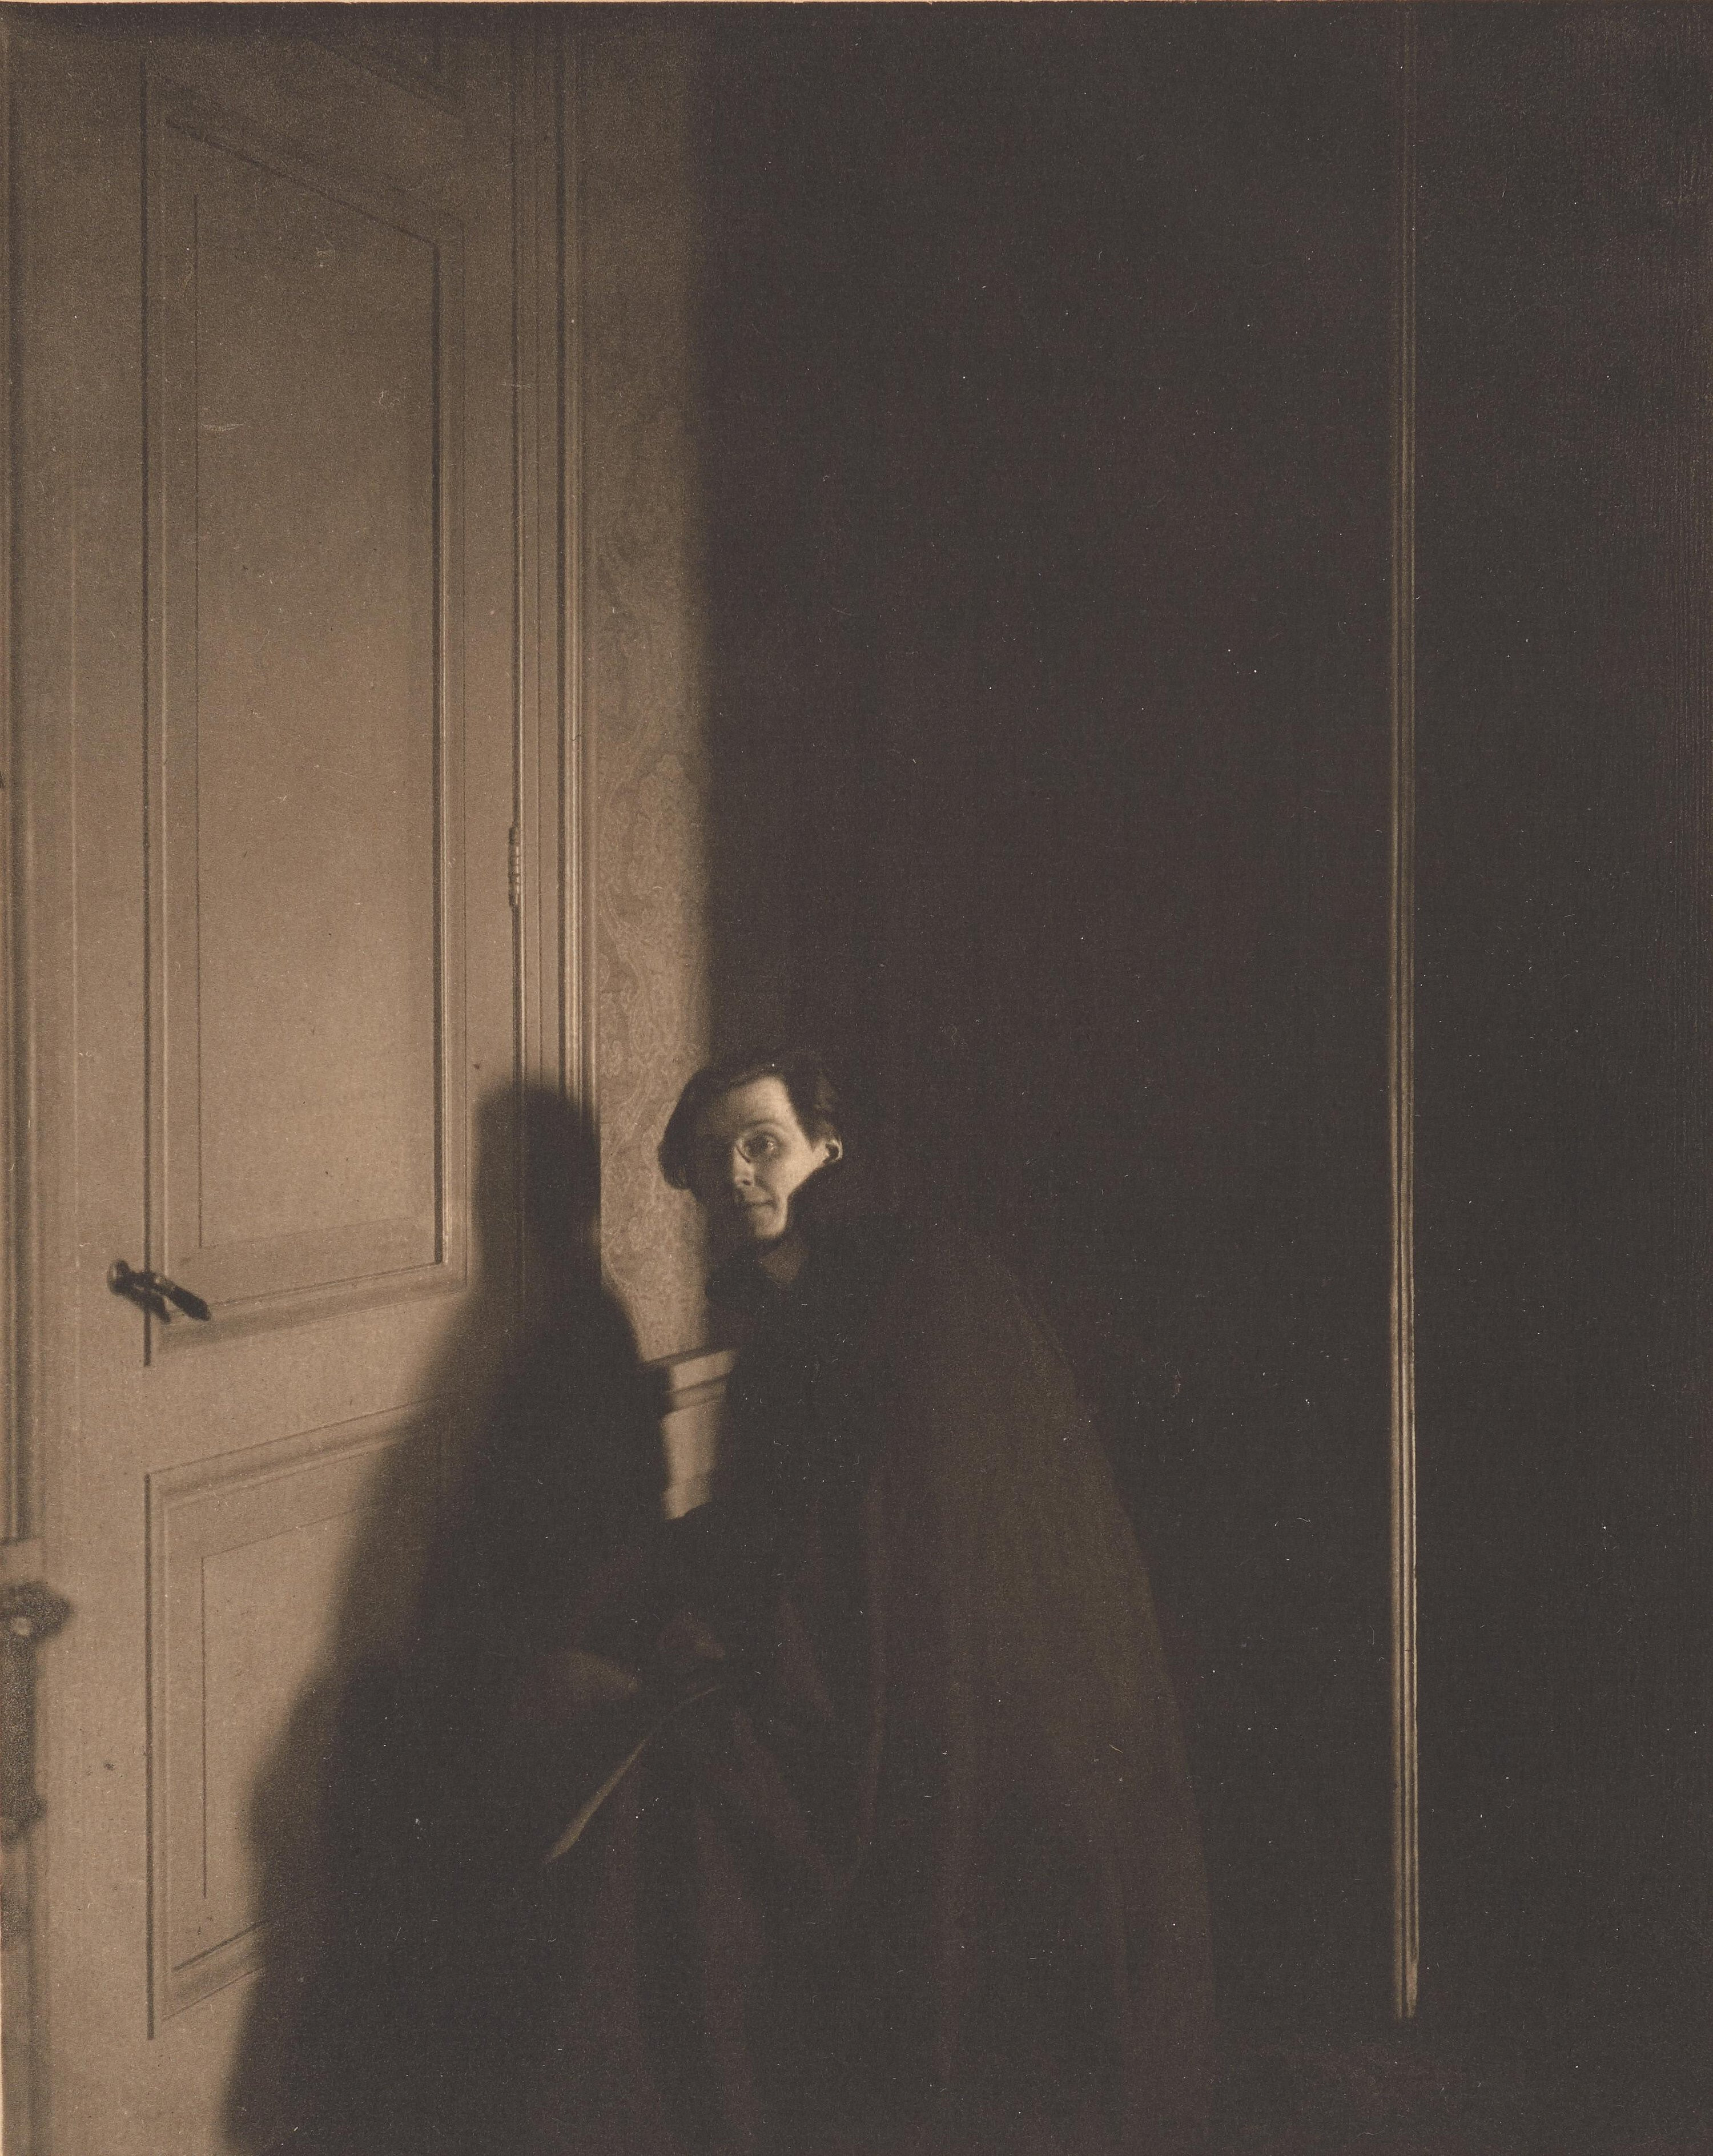 Э. Гордон Крейг, 1909 г. Фотограф Эдвард Стайхен